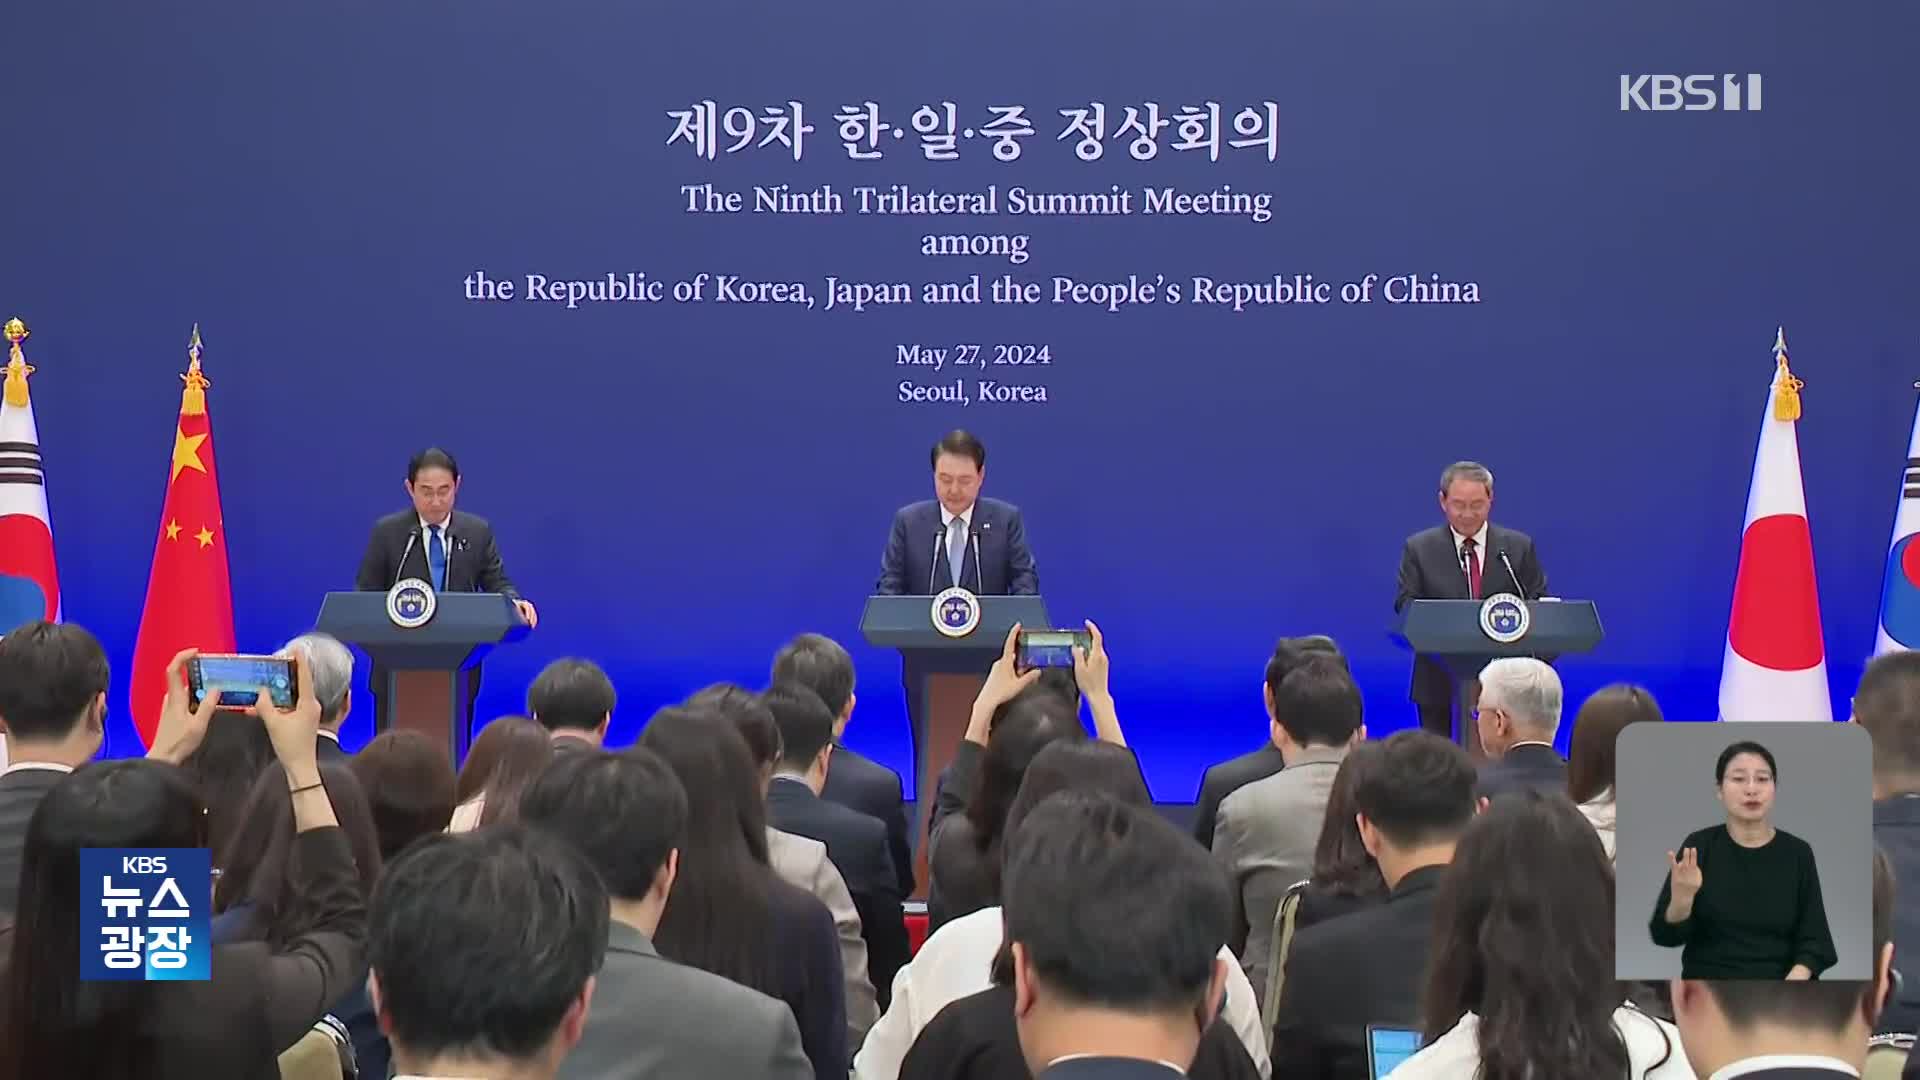 ‘역내 평화’ 강조…북한 문제는 미묘한 입장 차